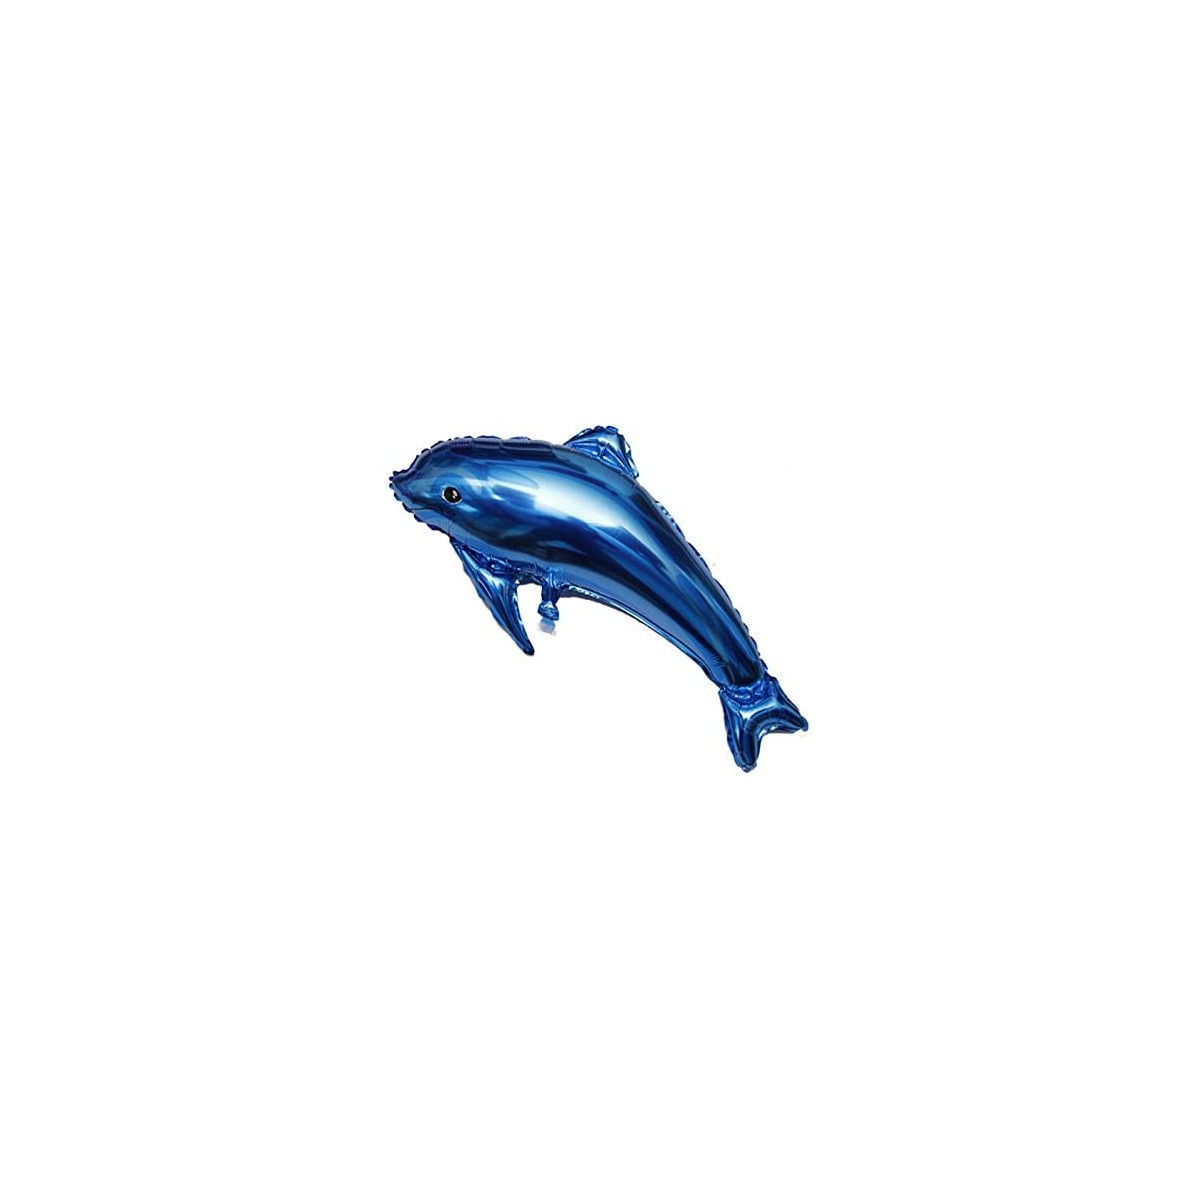 Palloncino delfino da 80 cm, per feste e party